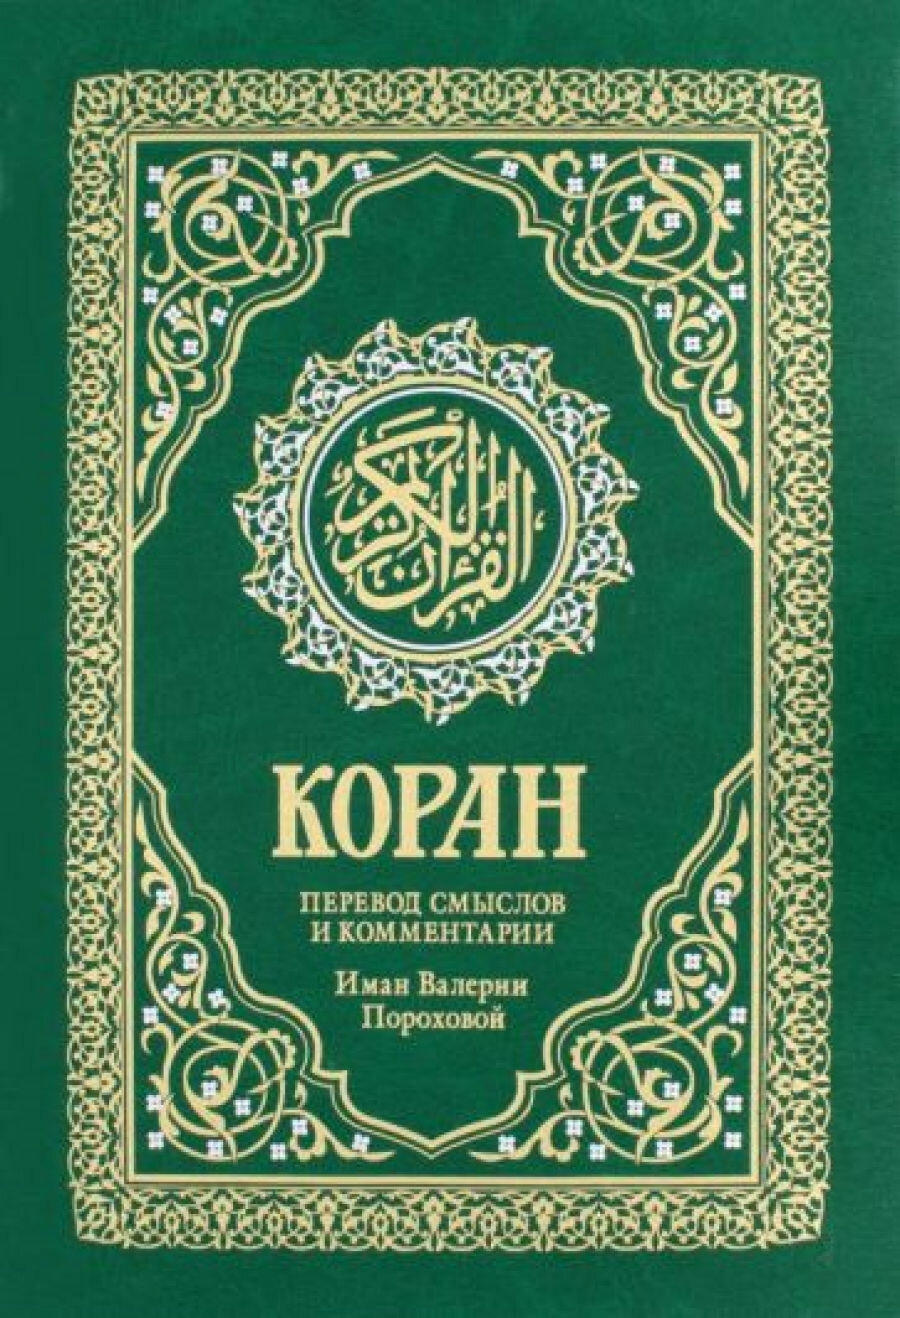 Коран. Перевод смыслов и комментарии Валерии Пороховой